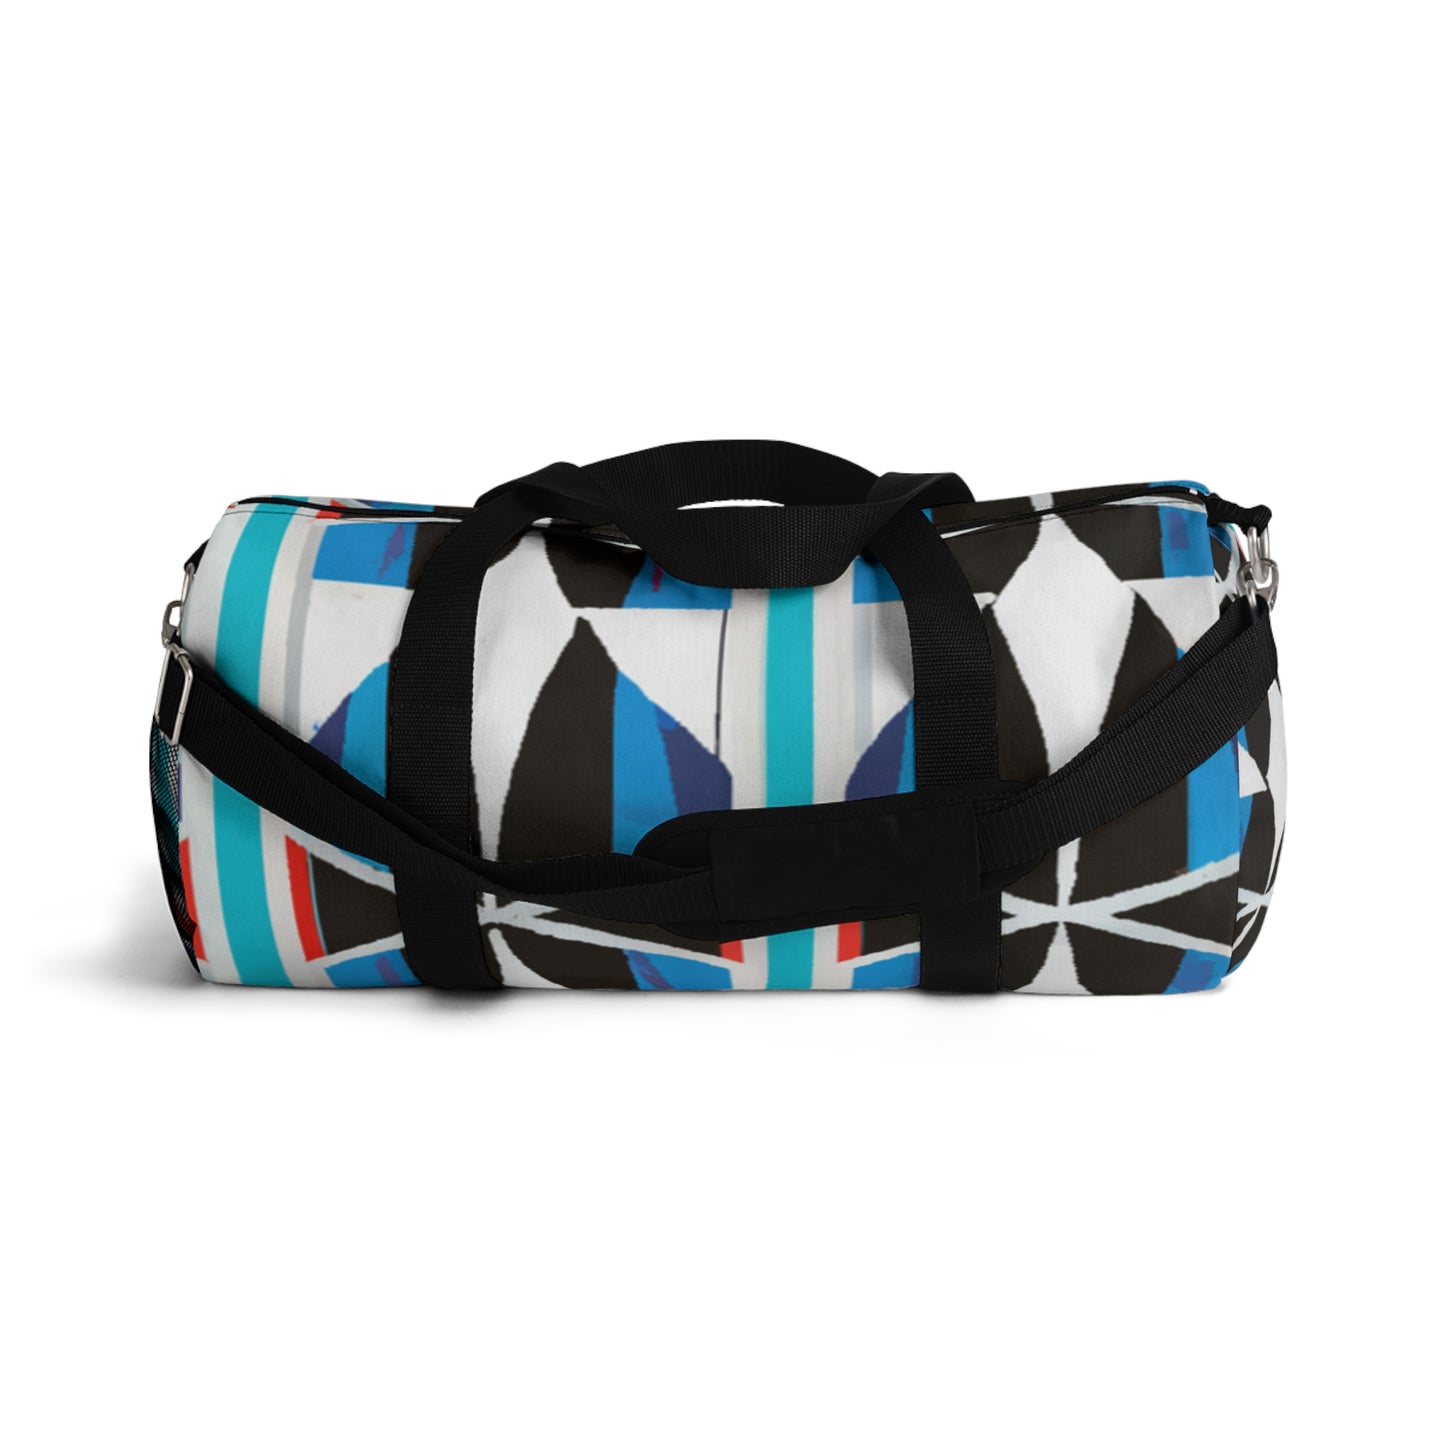 Frieda Schroeder - Geometric Pattern Duffel Travel Gym Luggage Bag